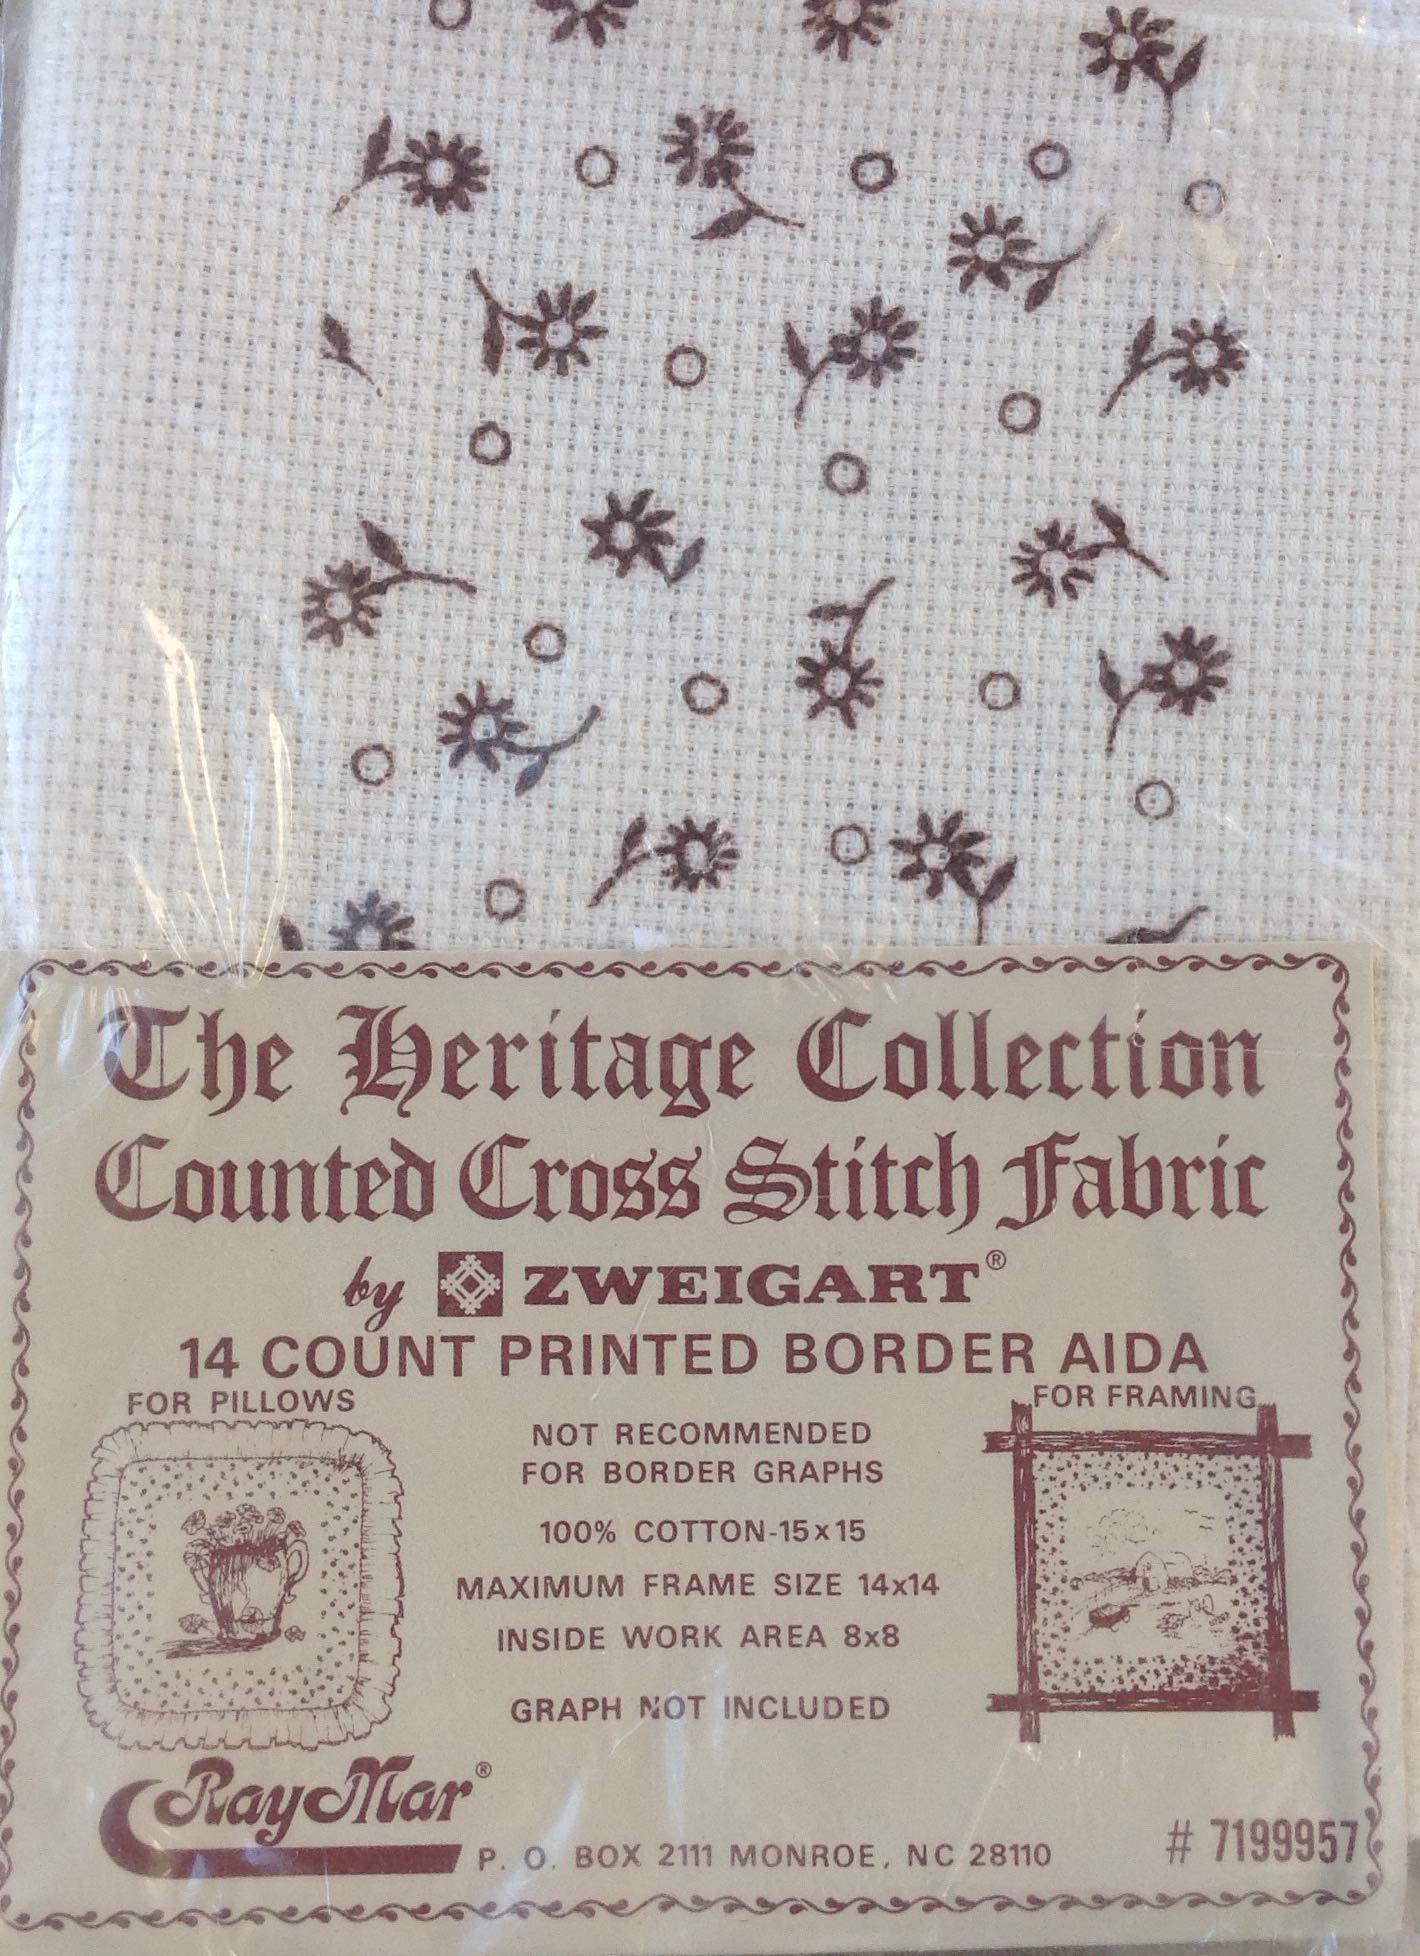 Raymar raymar cross stitch fabric 14 count - border aida - brown